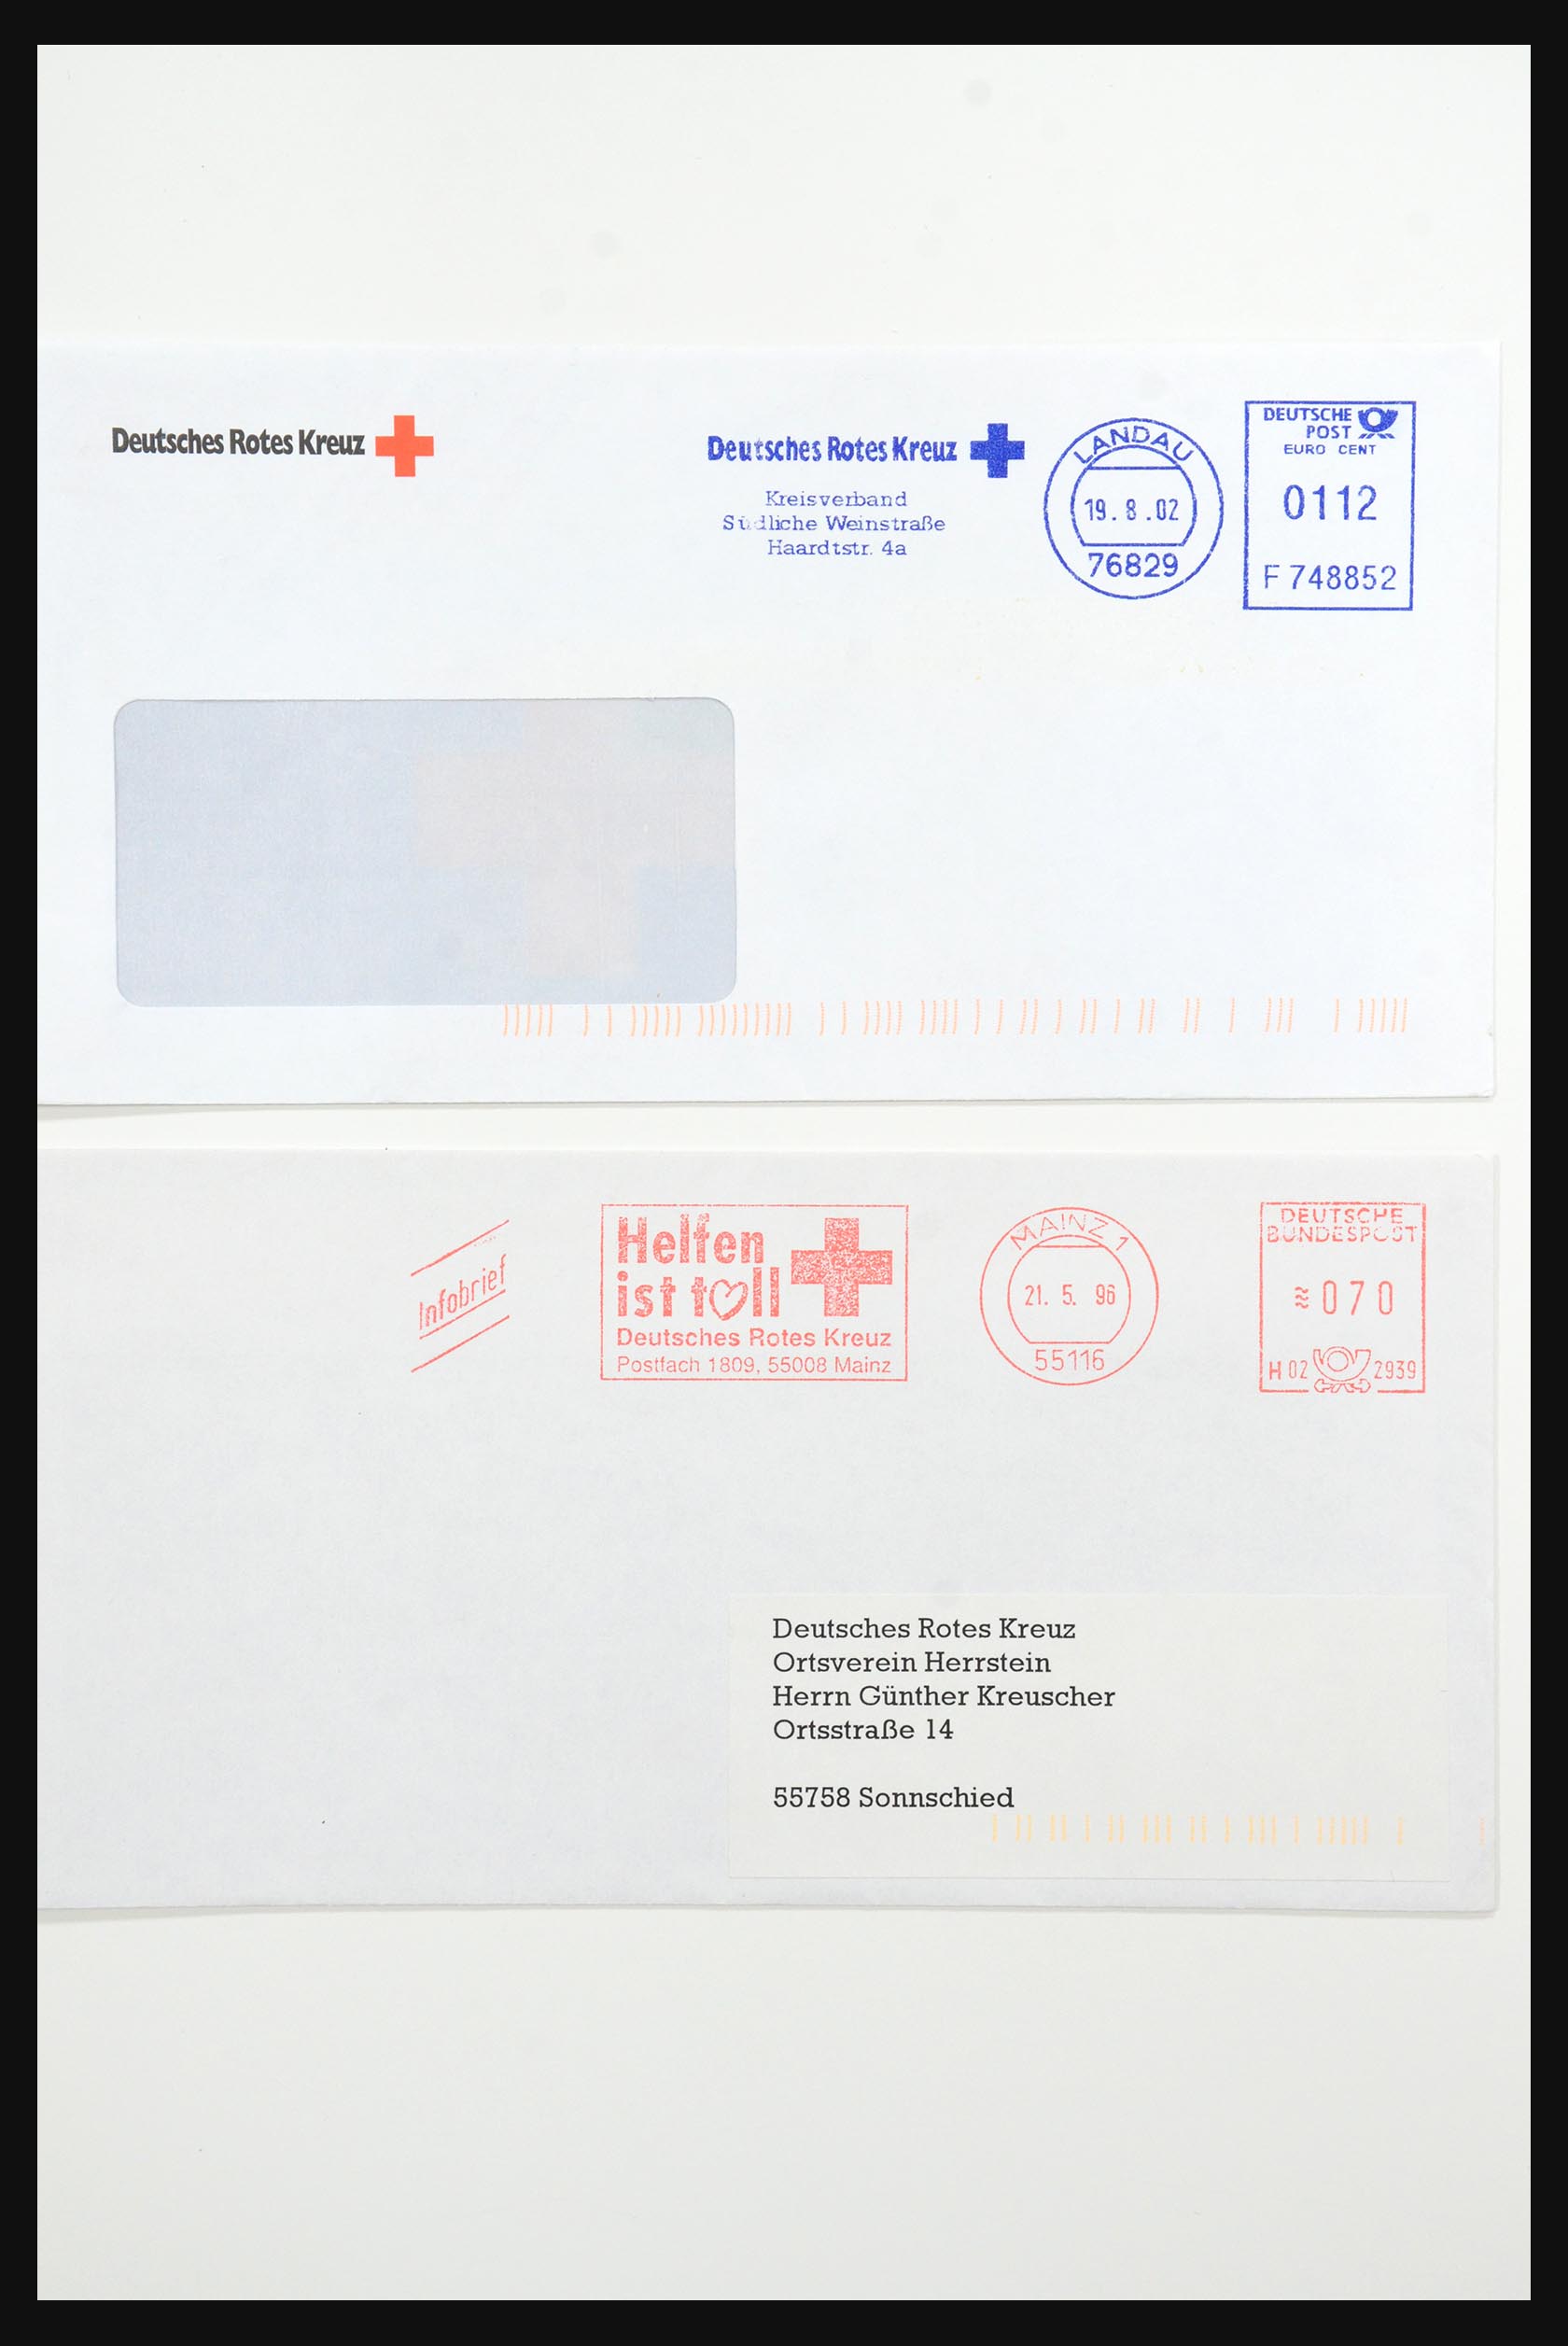 31365 1091 - 31365 Rode kruis brieven 1905-1975.